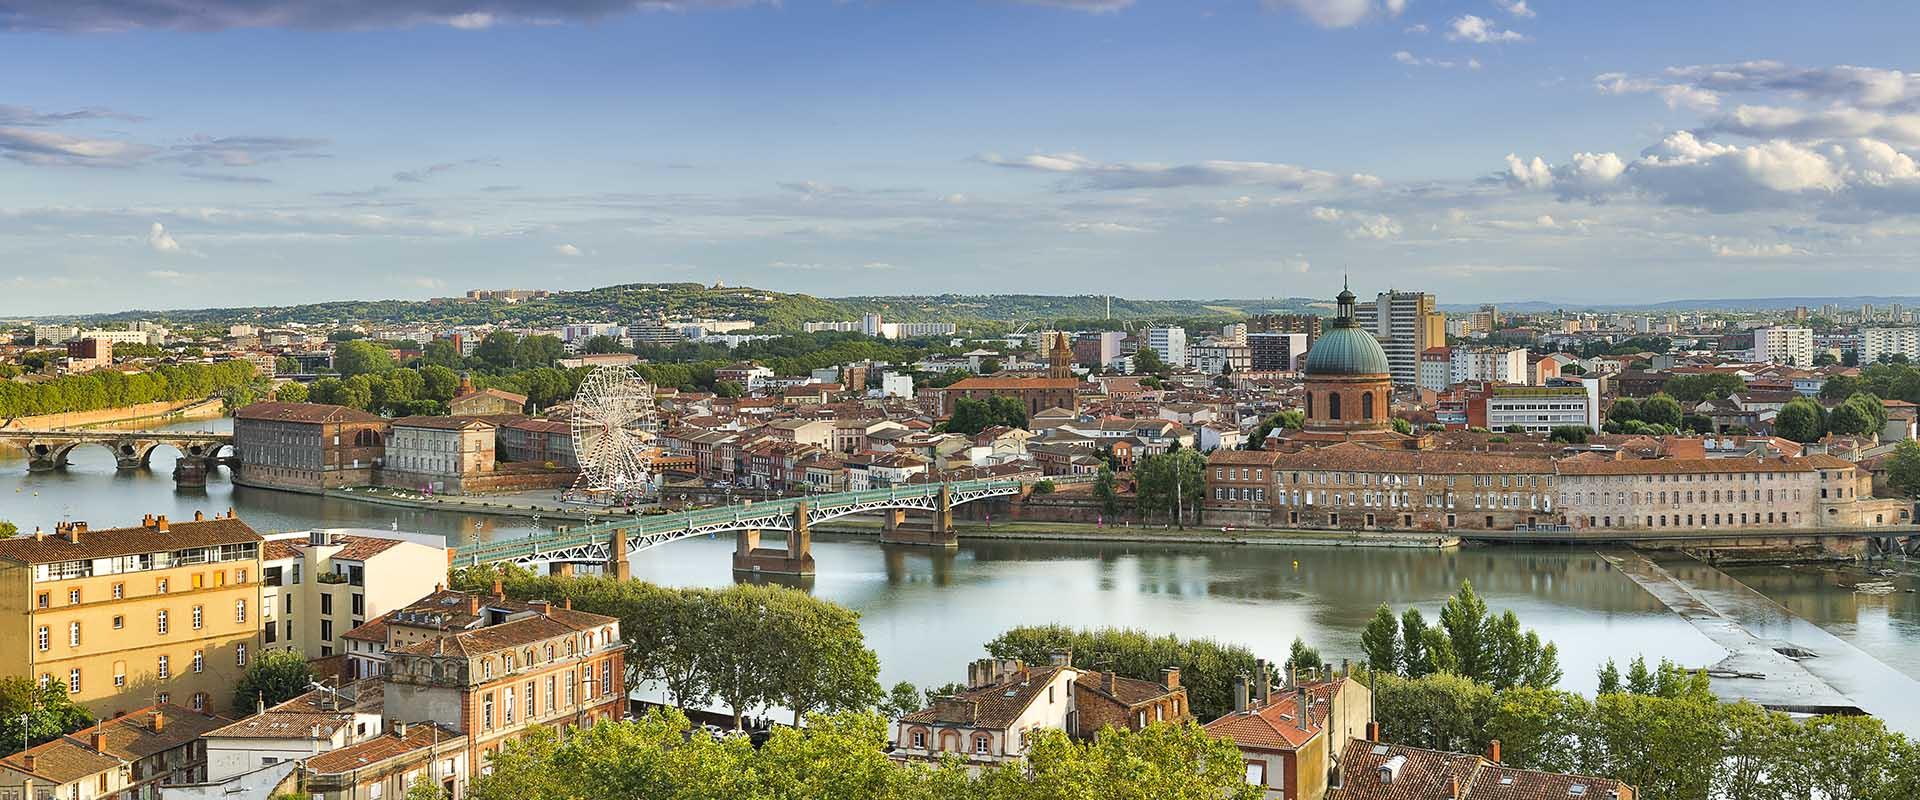 Toulouse bureau des Tournages, vue aérienne bords de Garonne